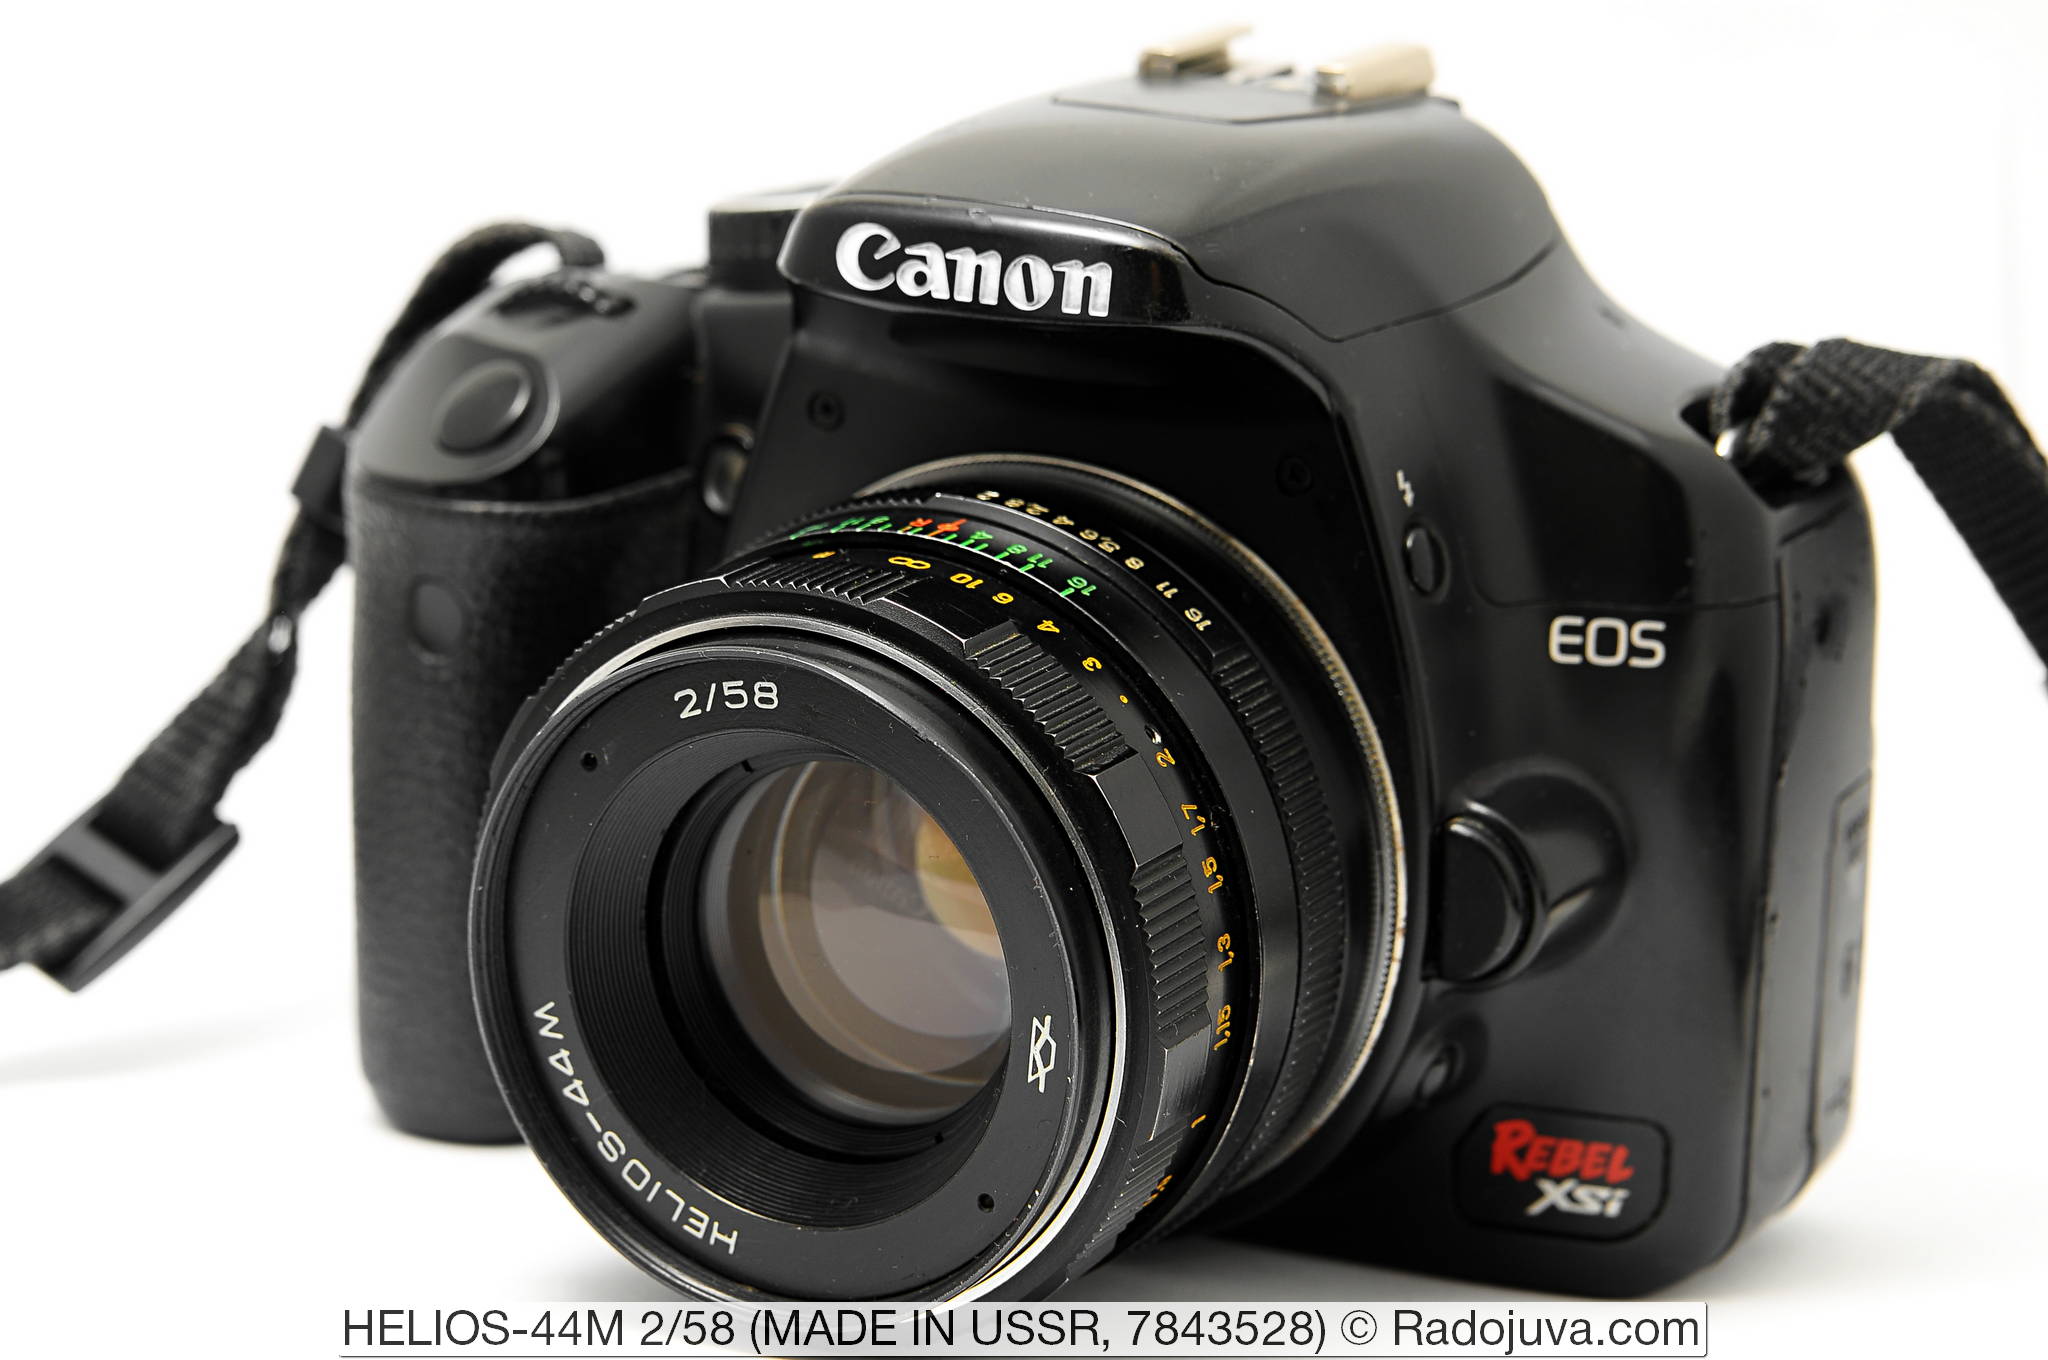 HELIOS-44M 2/58 завода КМЗ. Объектив показан на цифровом зеркальном фотоаппарате Canon EOS DIGITAL Rebel XSi. Установка объектива на фотоаппарат осуществлена с помощью переходника M42-Canon EOS с чипом.